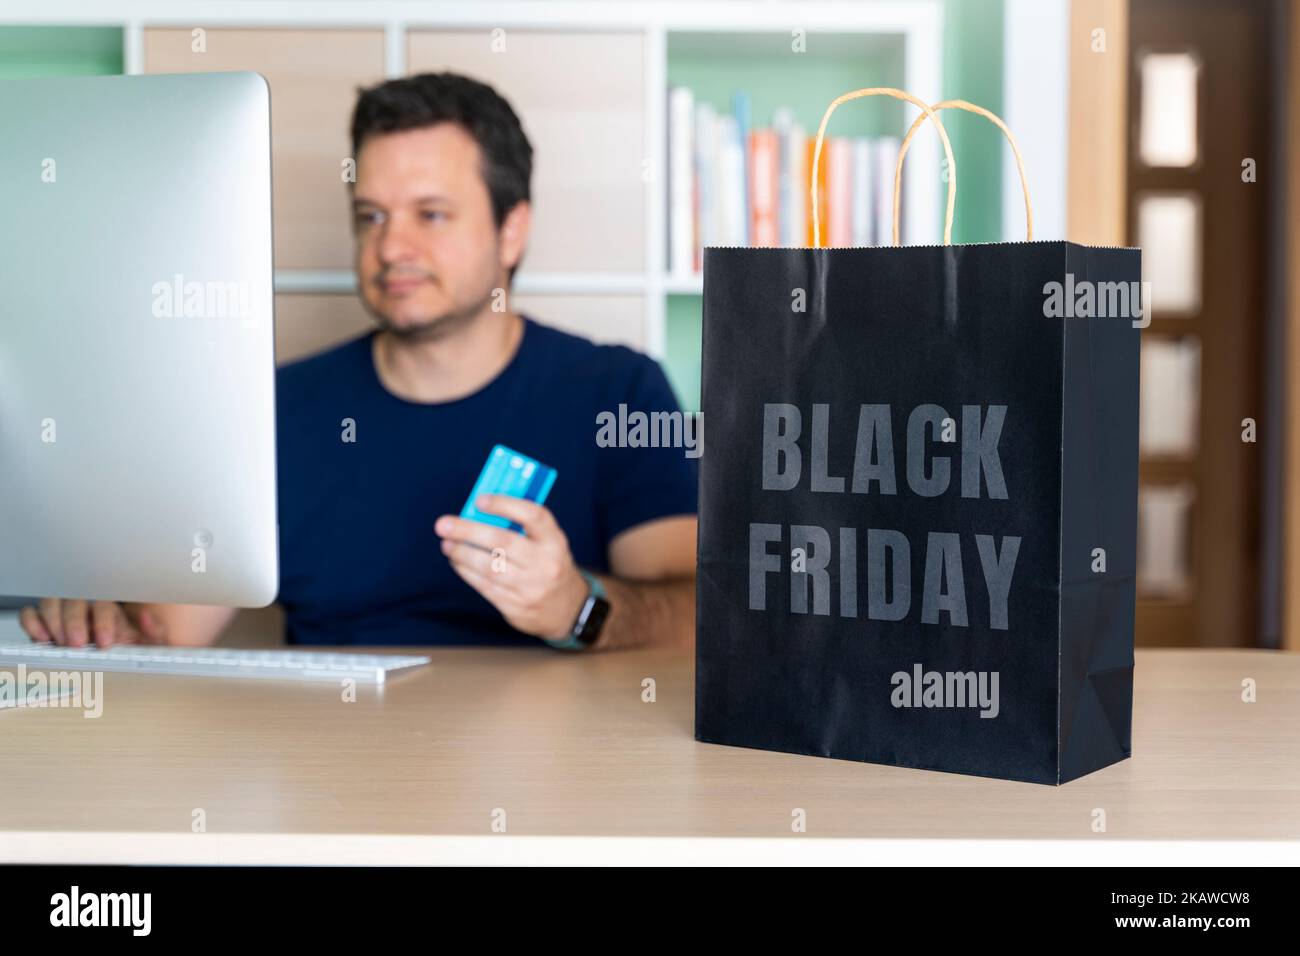 Mann in seinem Heimbüro, der Sachen online für schwarzen freitag kauft Stockfoto